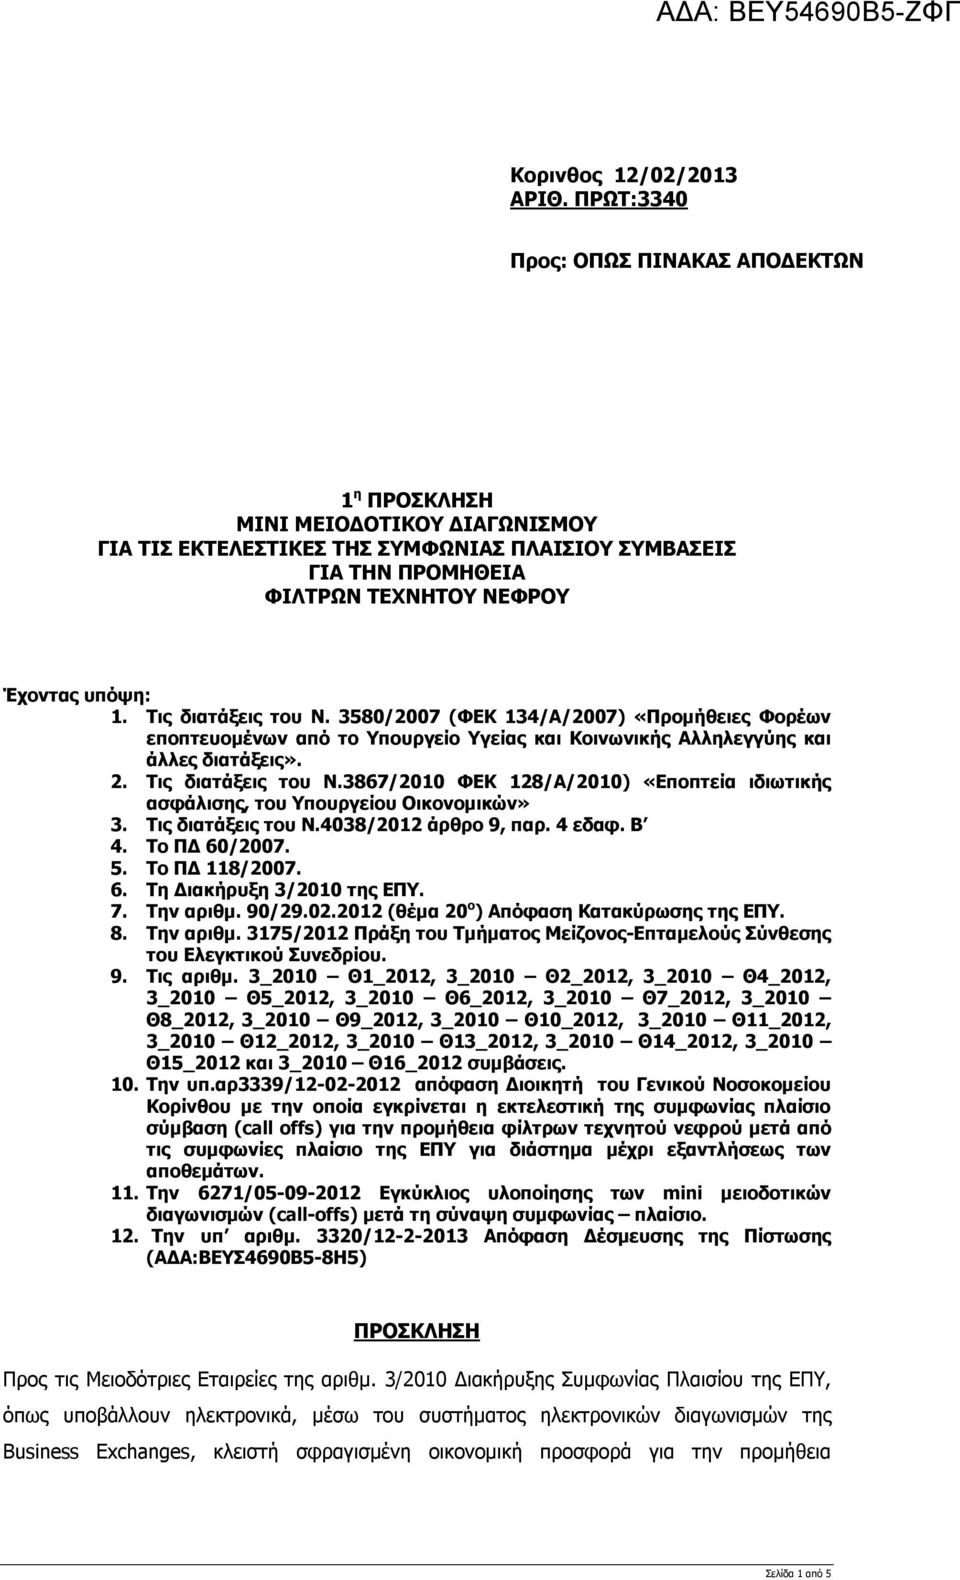 Τις διατάξεις του Ν. 3580/2007 (ΦΕΚ 134/Α/2007) «Προμήθειες Φορέων εποπτευομένων από το Υπουργείο Υγείας και Κοινωνικής Αλληλεγγύης και άλλες διατάξεις». 2. Τις διατάξεις του Ν.